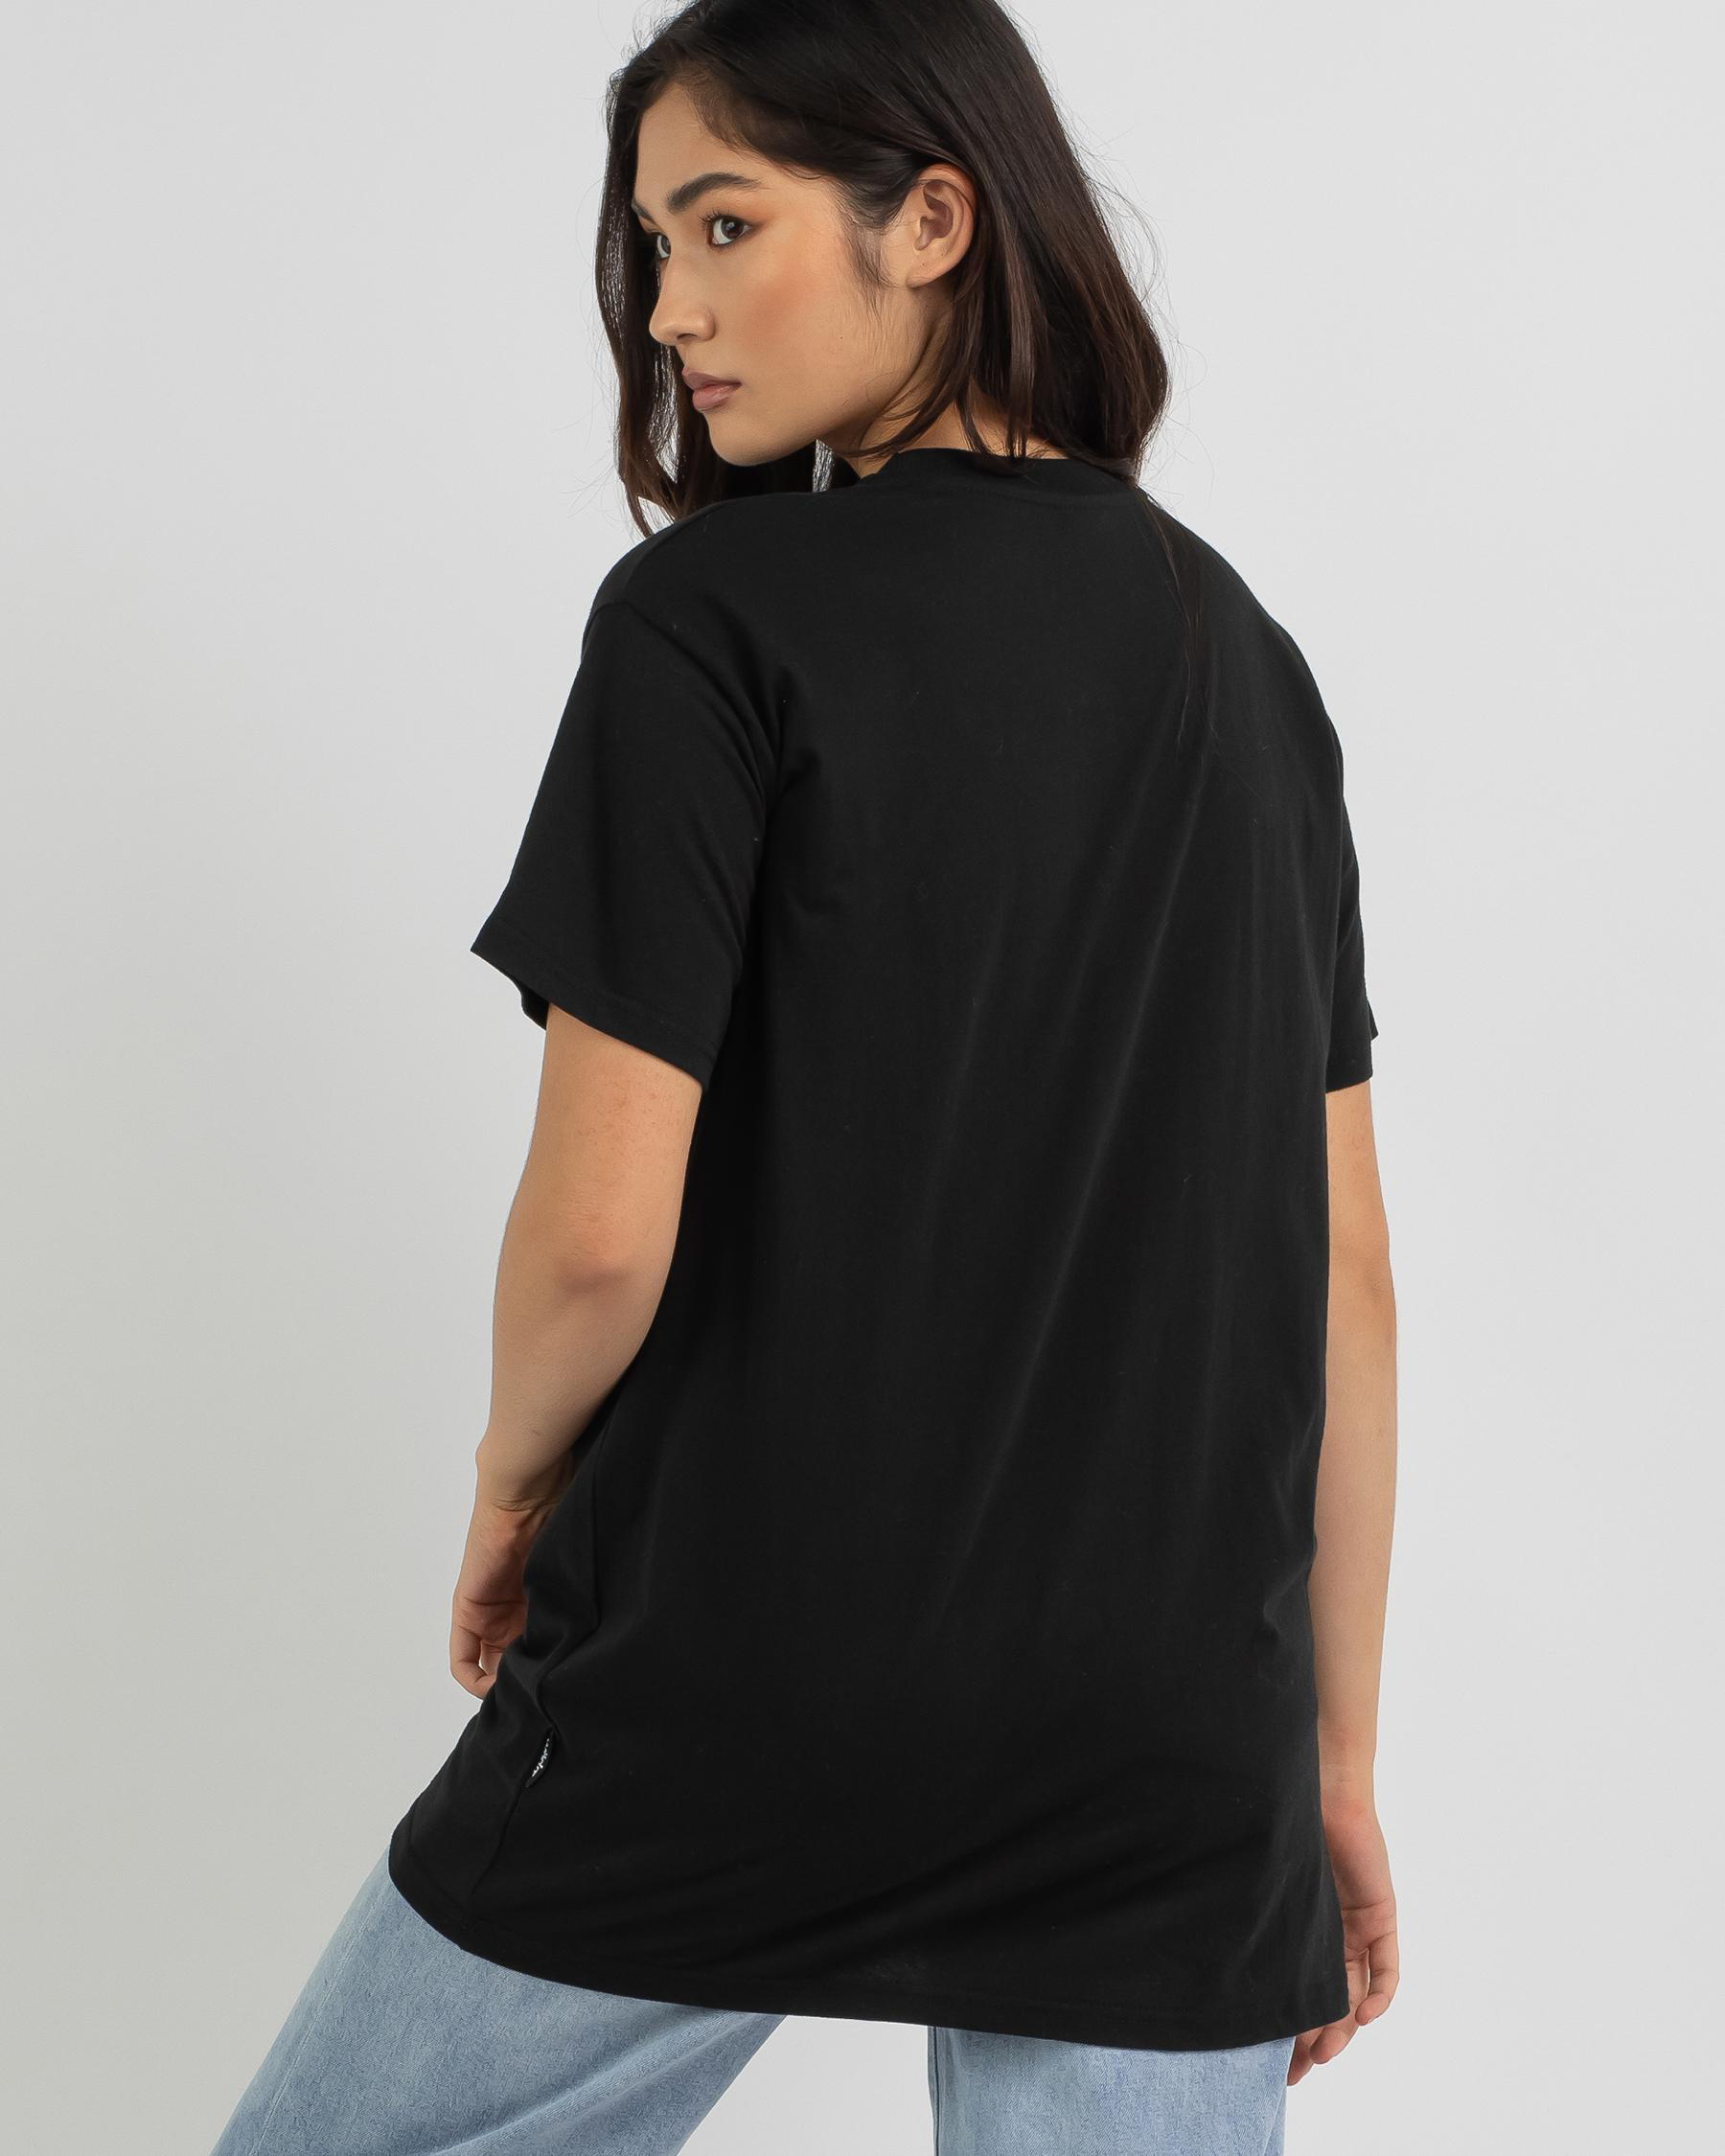 Wndrr Blueprint T-Shirt In Black - Fast Shipping & Easy Returns - City ...